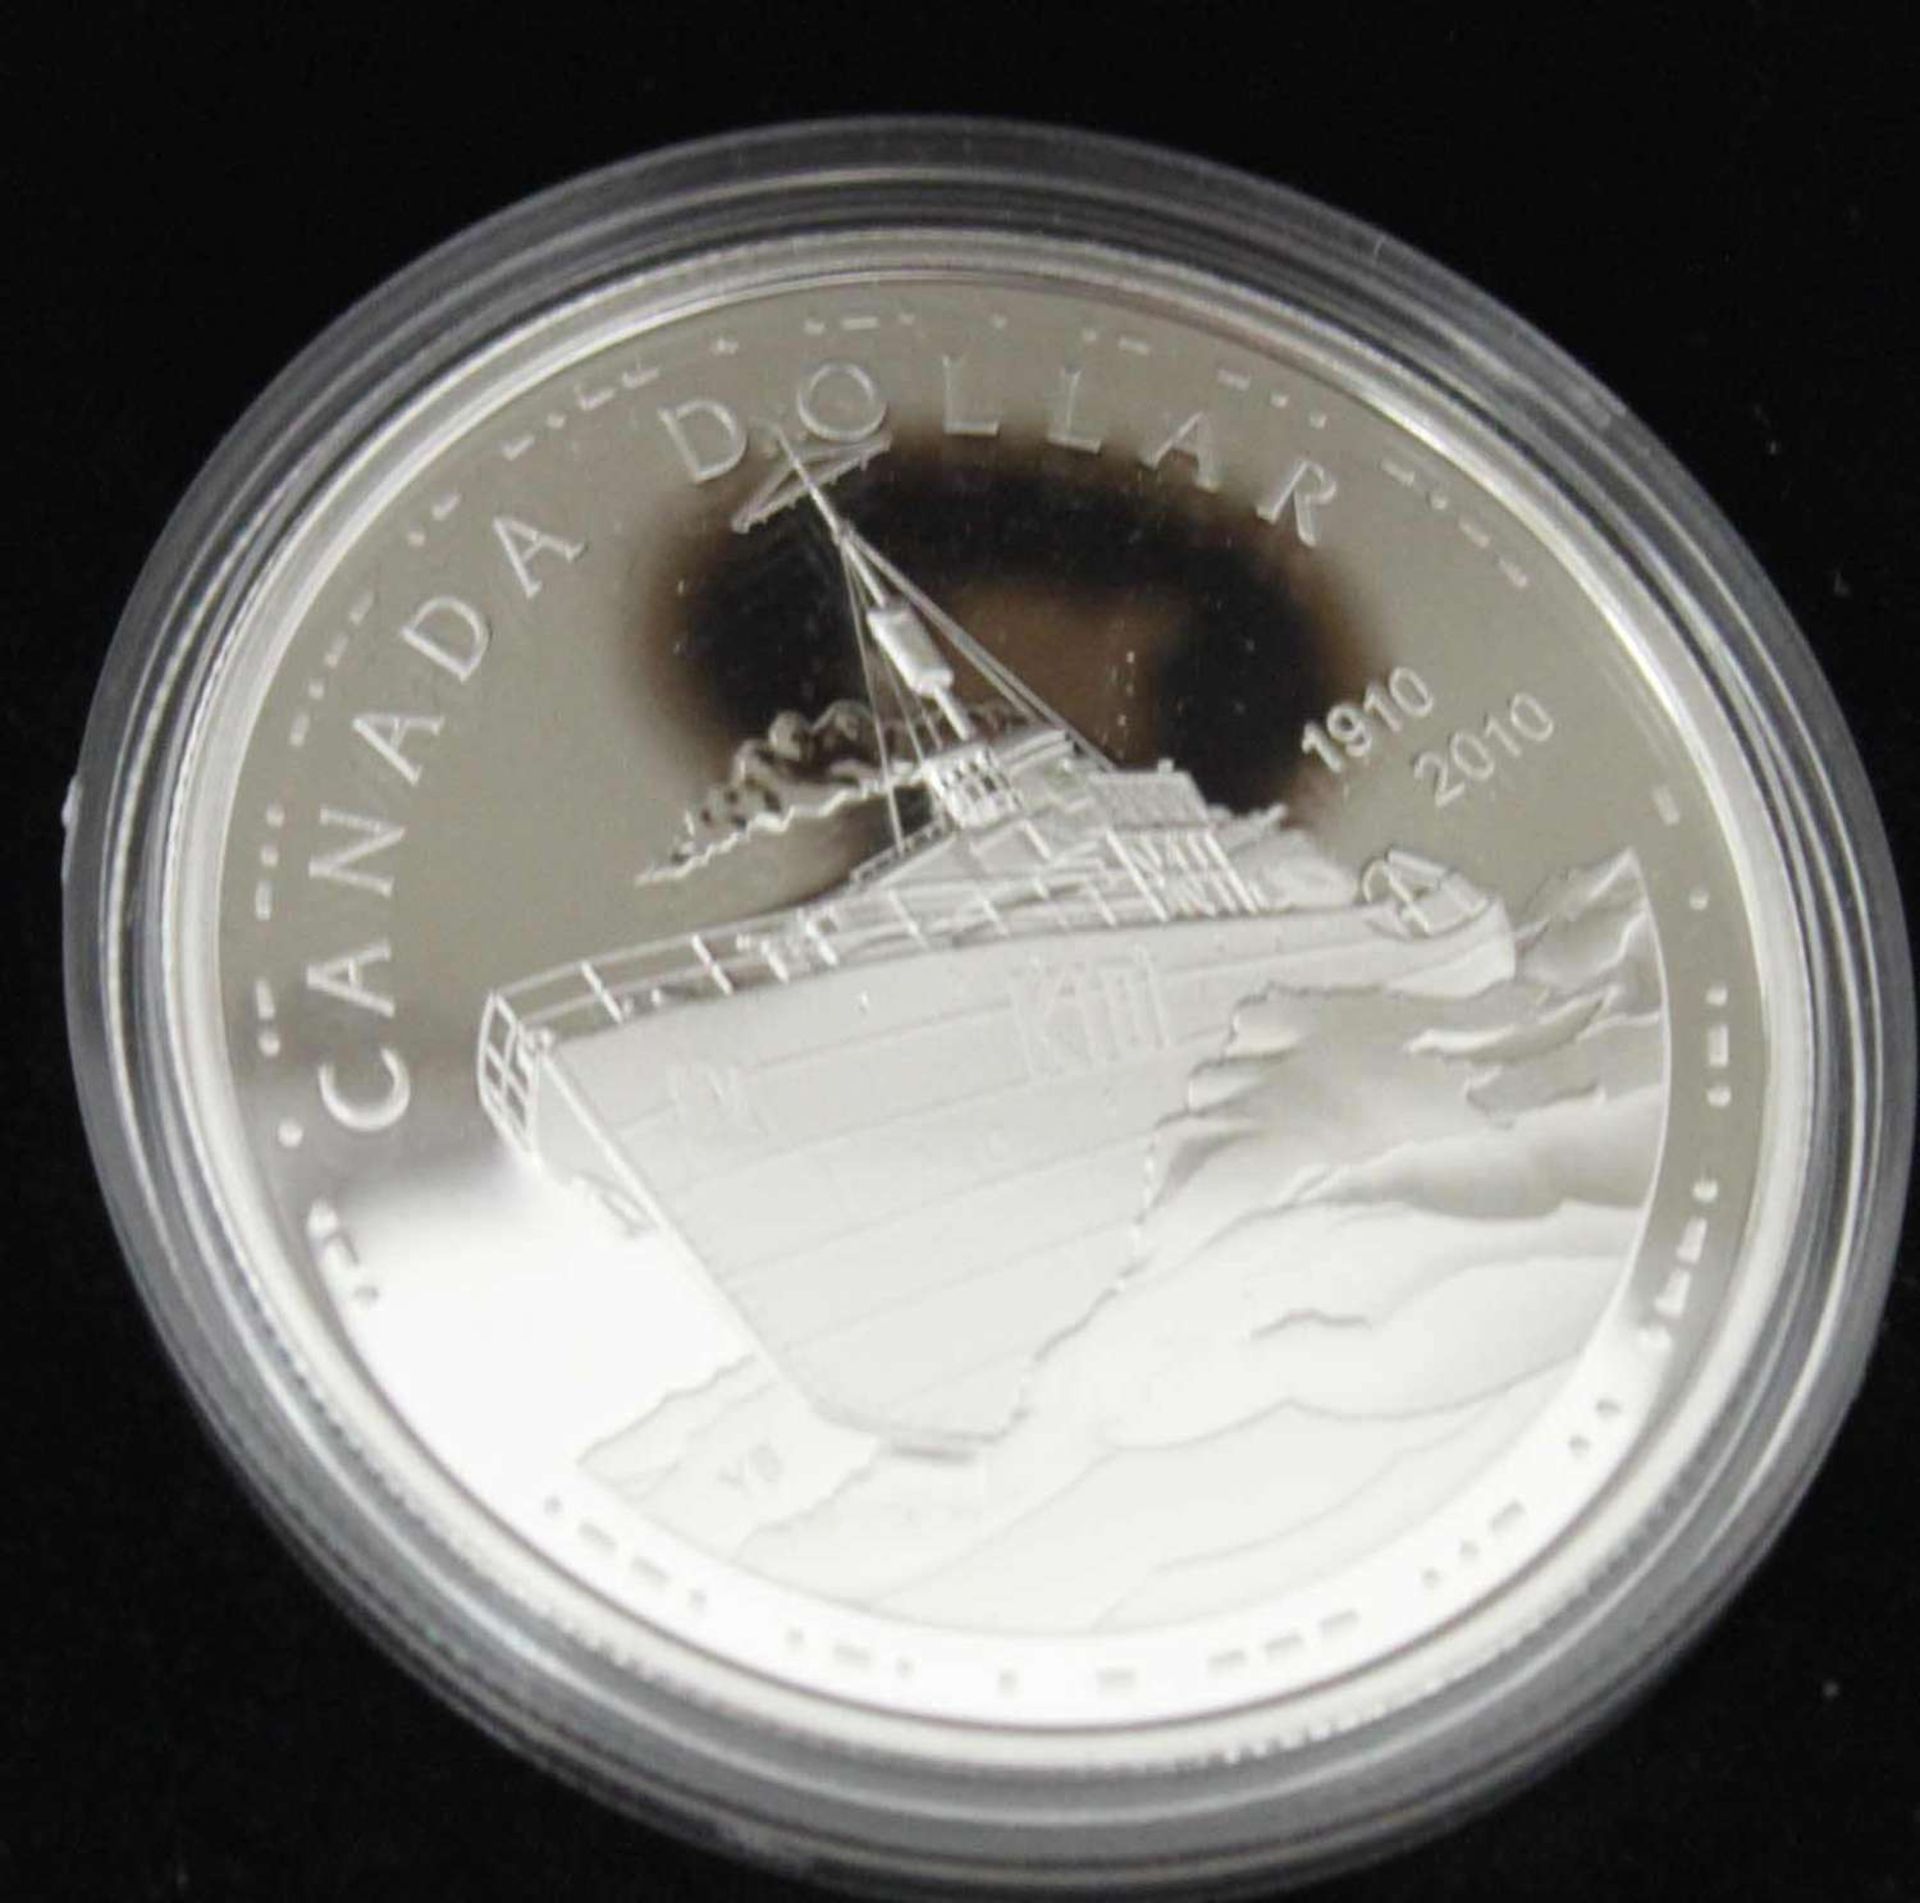 Canada Dollar 2010, 100 Jahre Marine in Canada, Proof Silver Dollar im Etui Canada Dollar 2010,